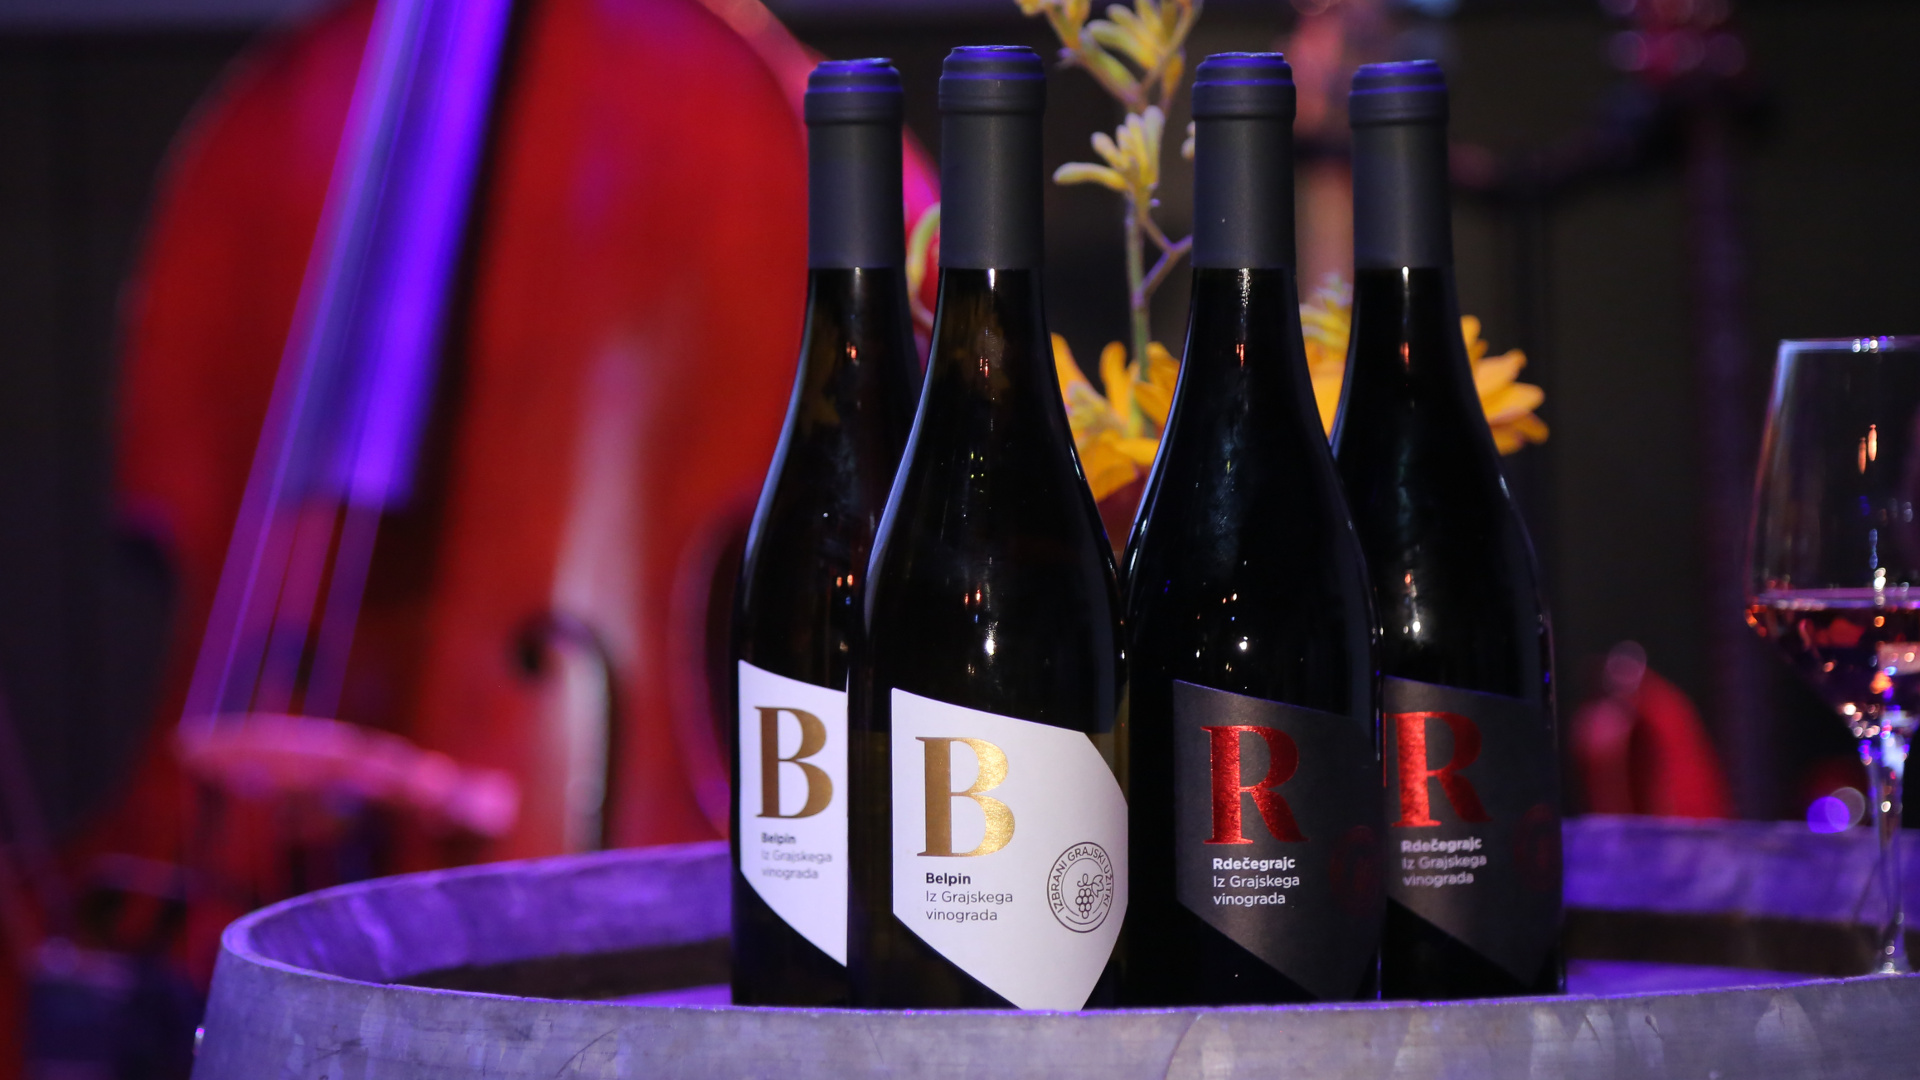 Prve steklenice grajskega vina, Belpina in Rdečegrajca. Foto: Miha Mally